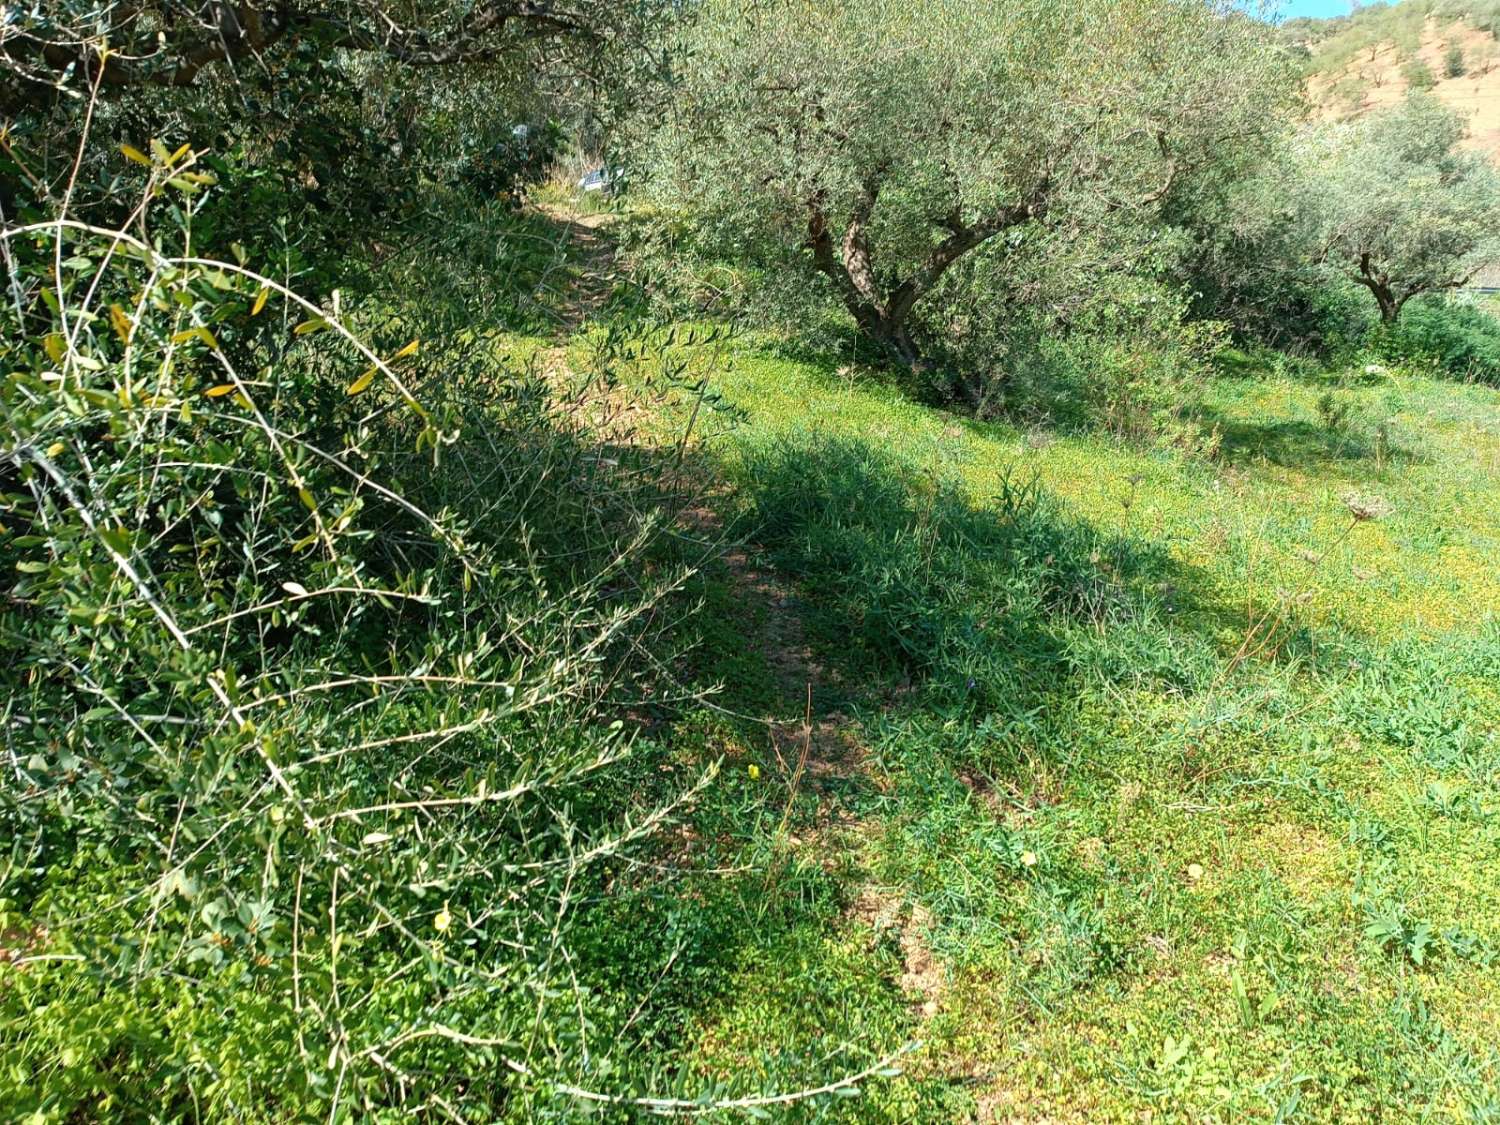 Enolias-tontti oliivipuilla